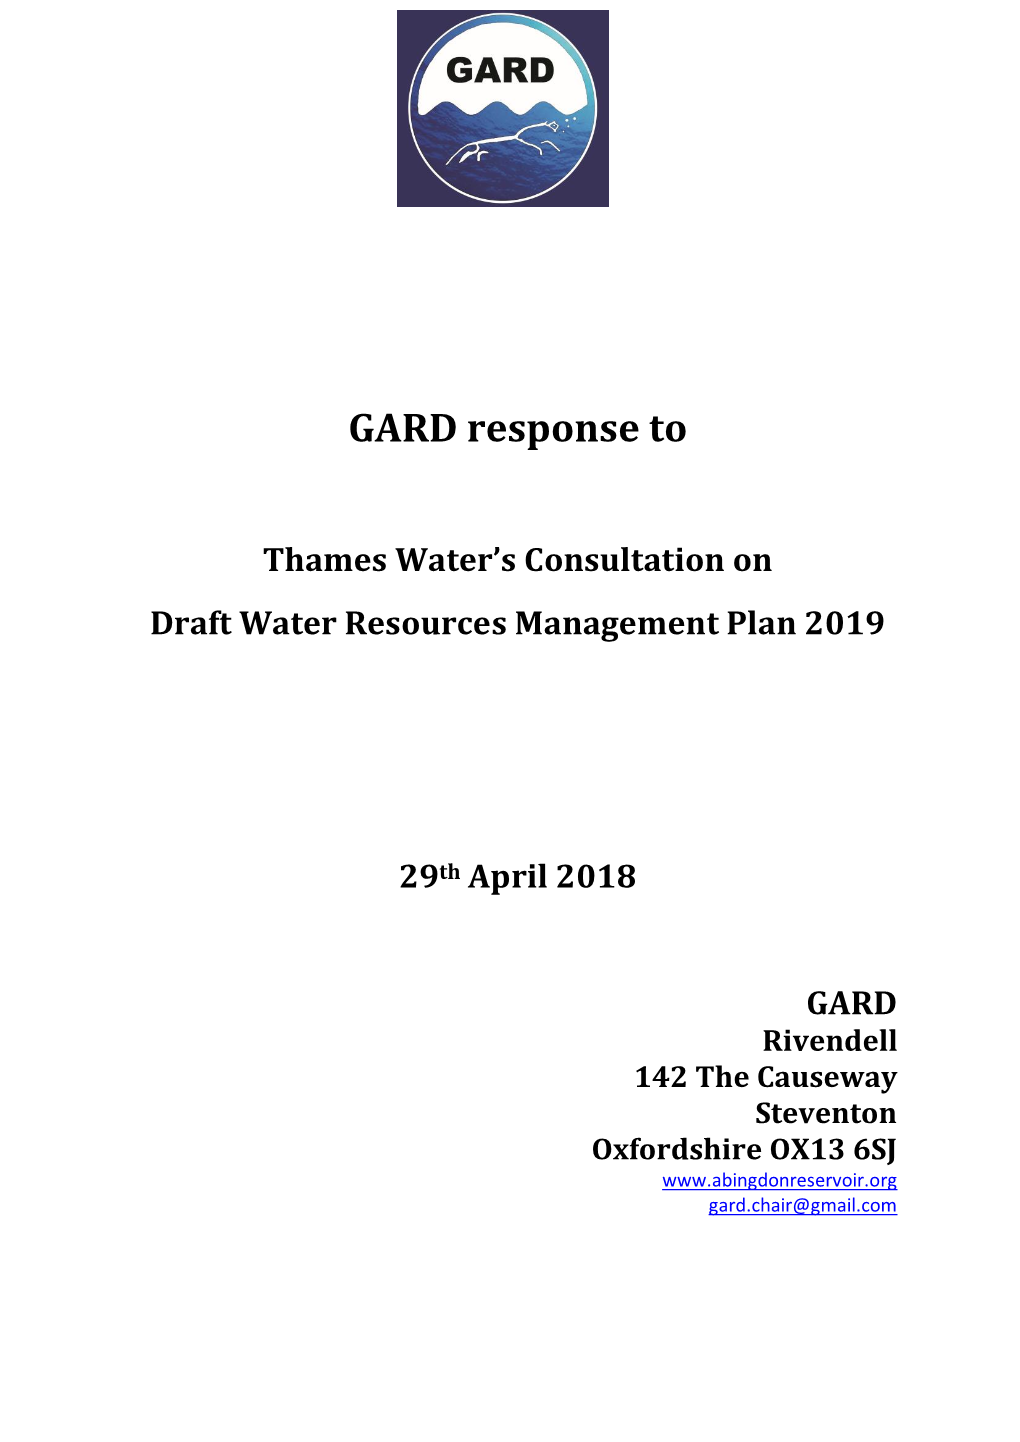 GARD Response To